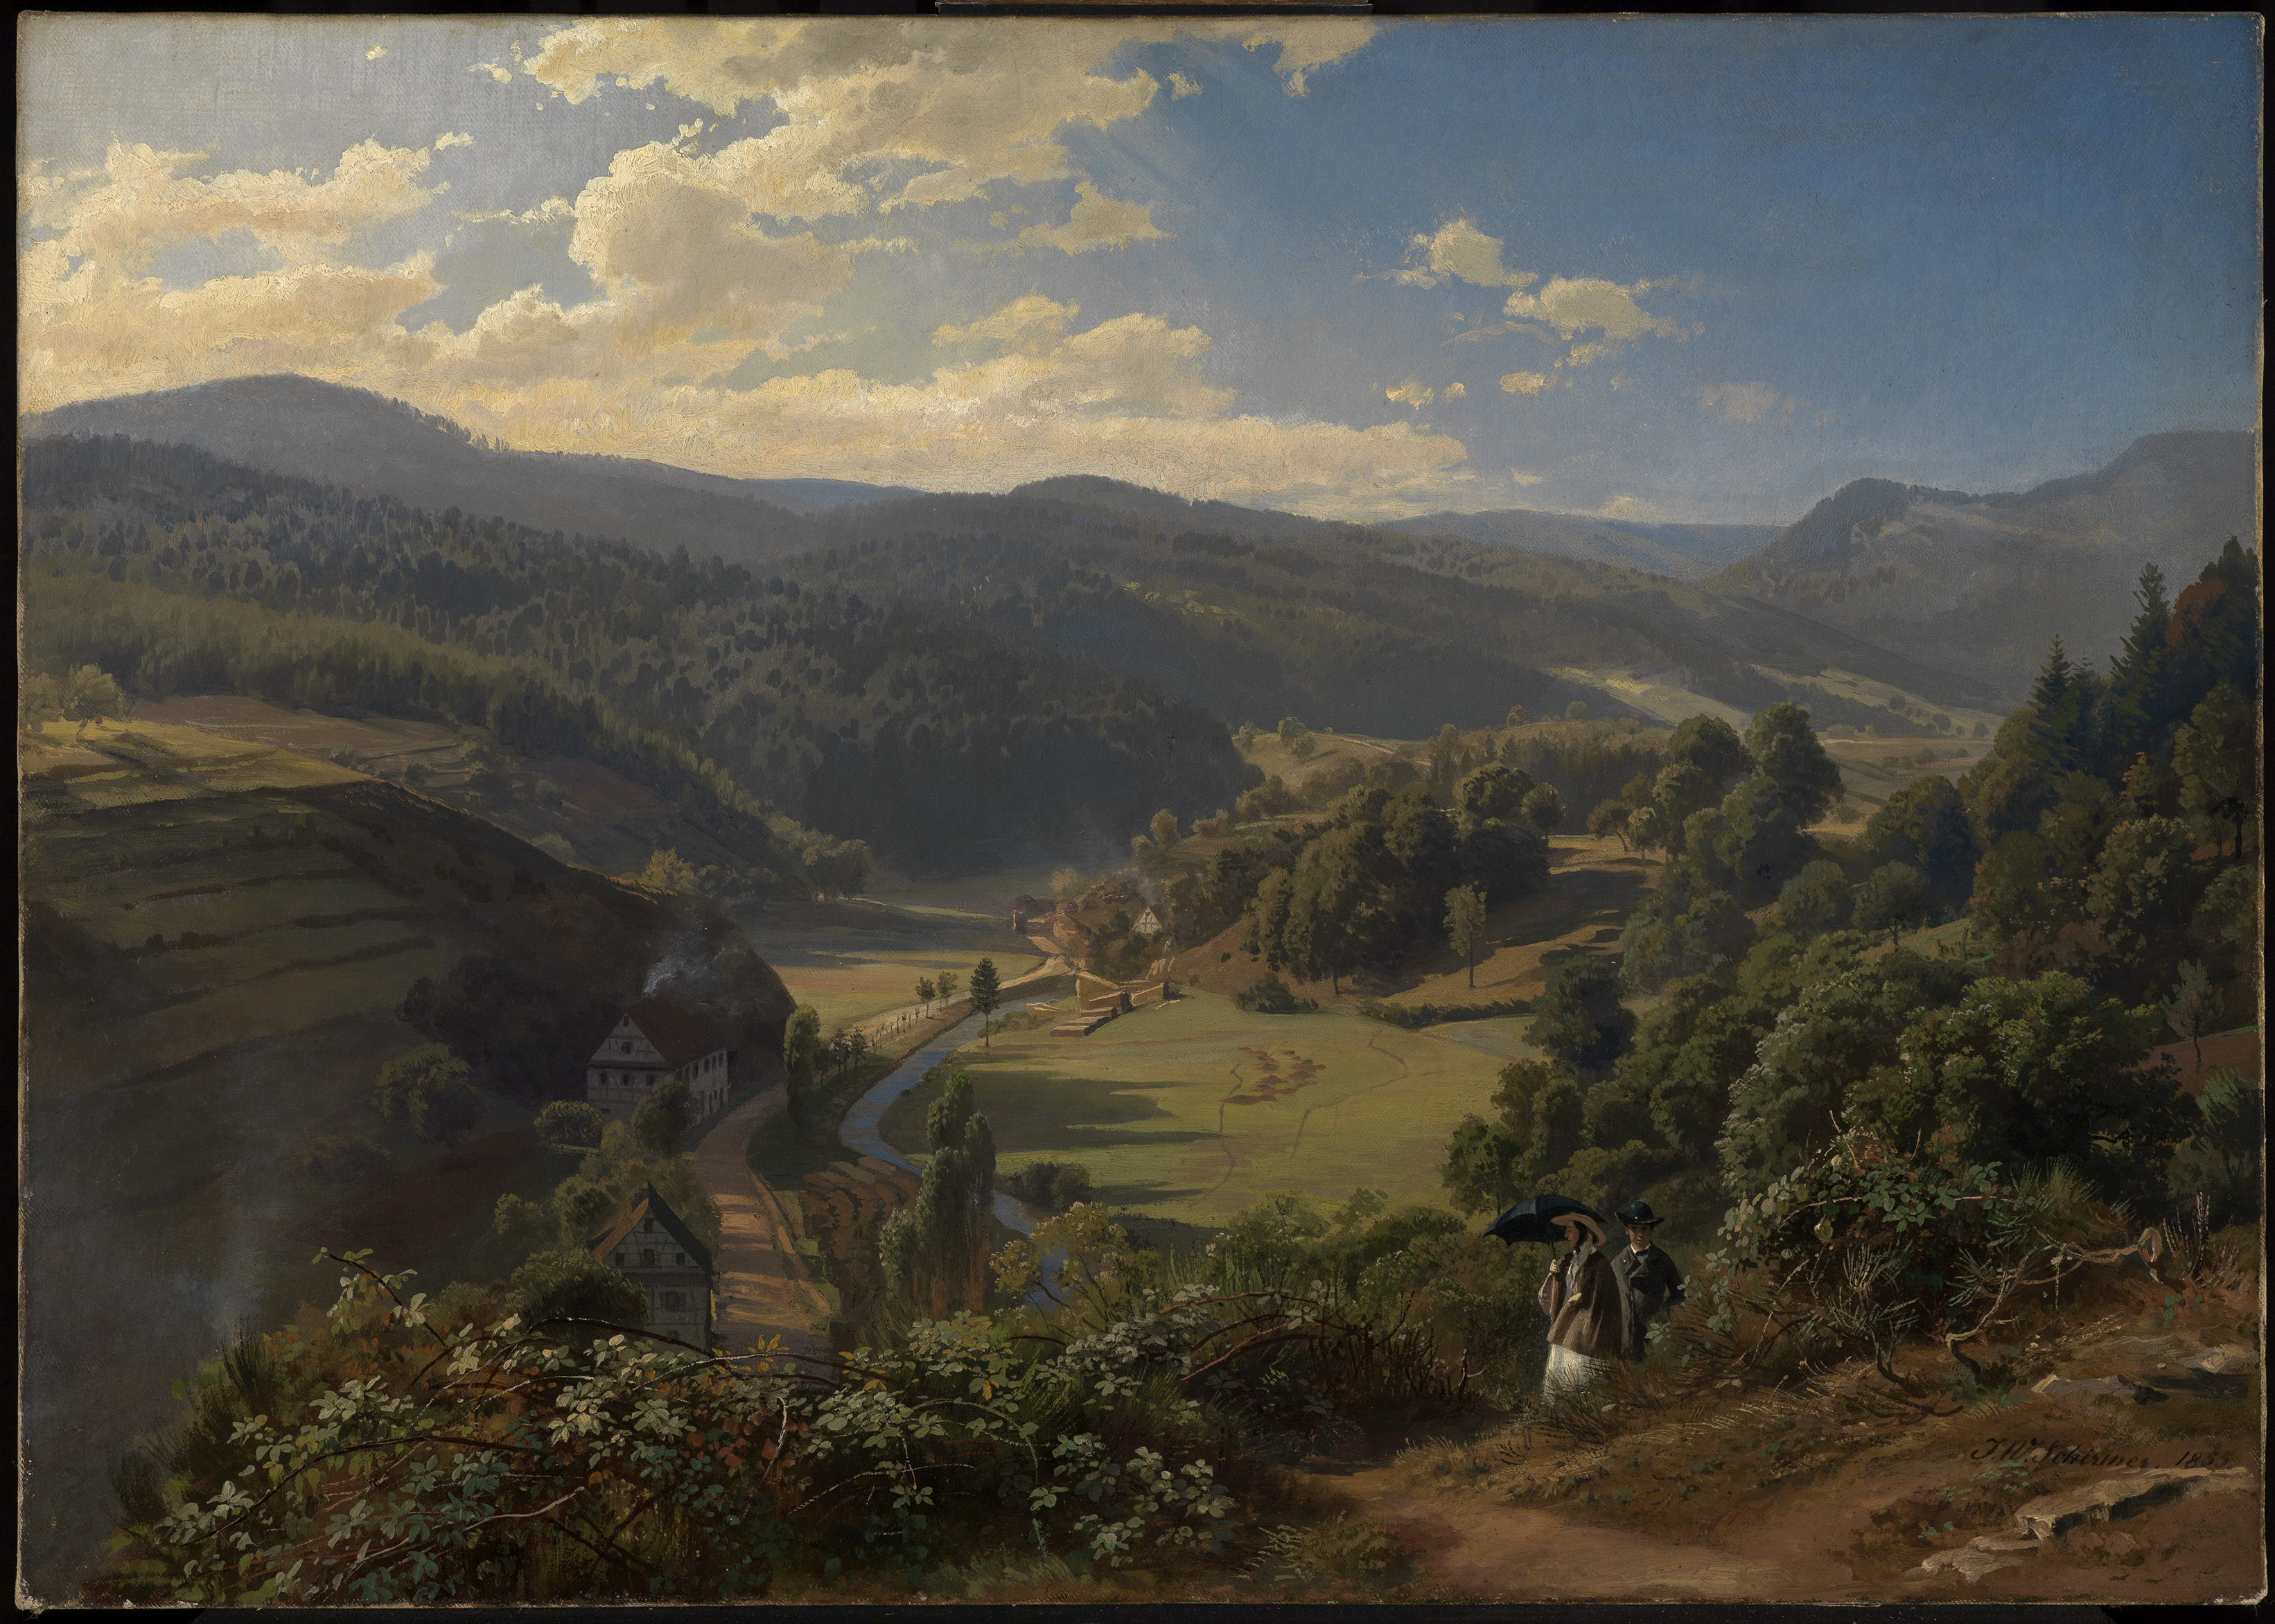 Geroldsauer Valley close to Baden-Baden by Johann Wilhelm Schirmer - 1855 - 59.5 x 82.5 cm Staatliche Kunsthalle Karlsruhe